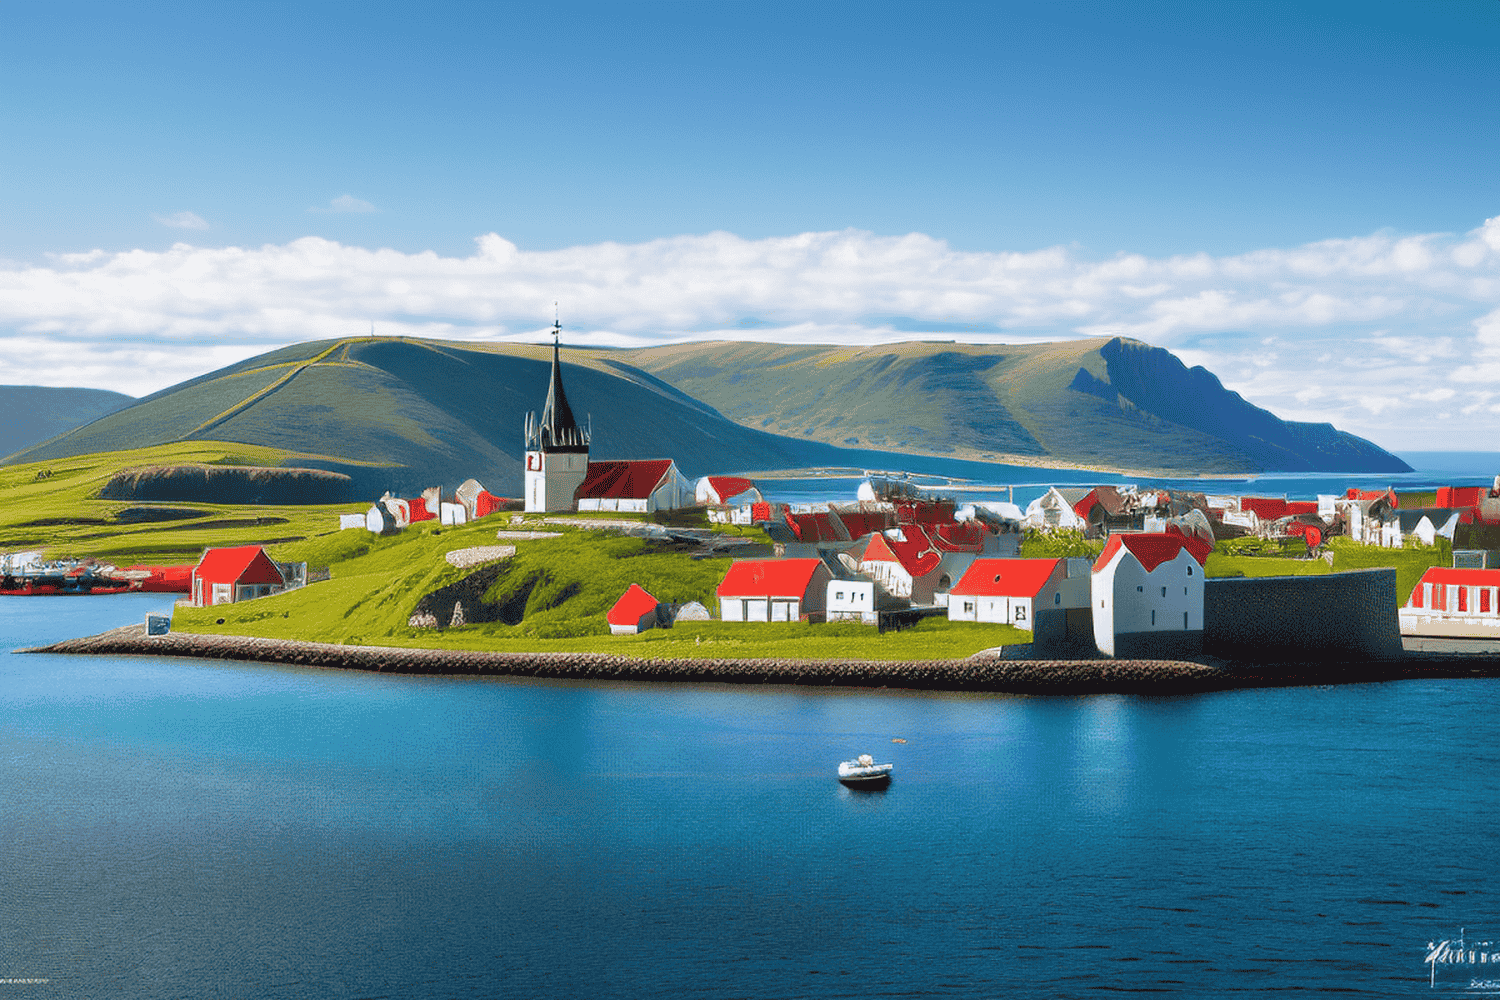 Information about Saint Pierre and Miquelon